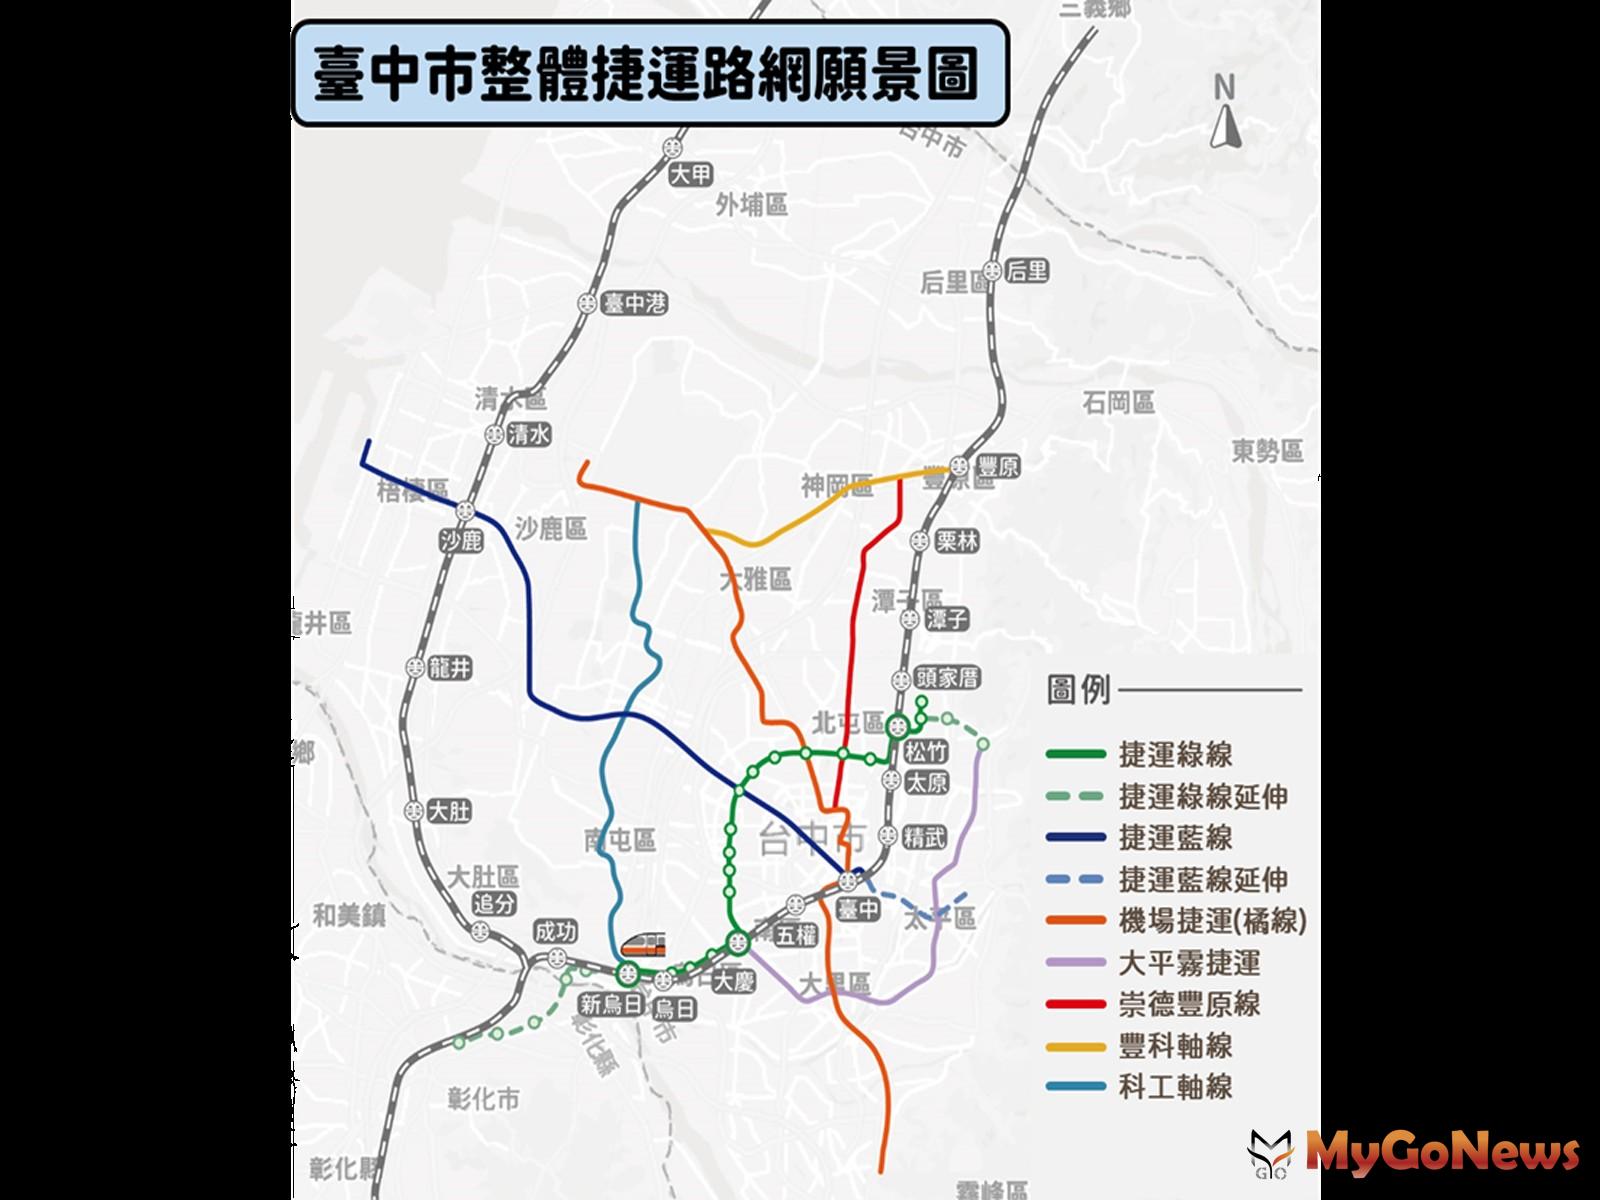 台中捷運整體路網計畫獲交通部同意